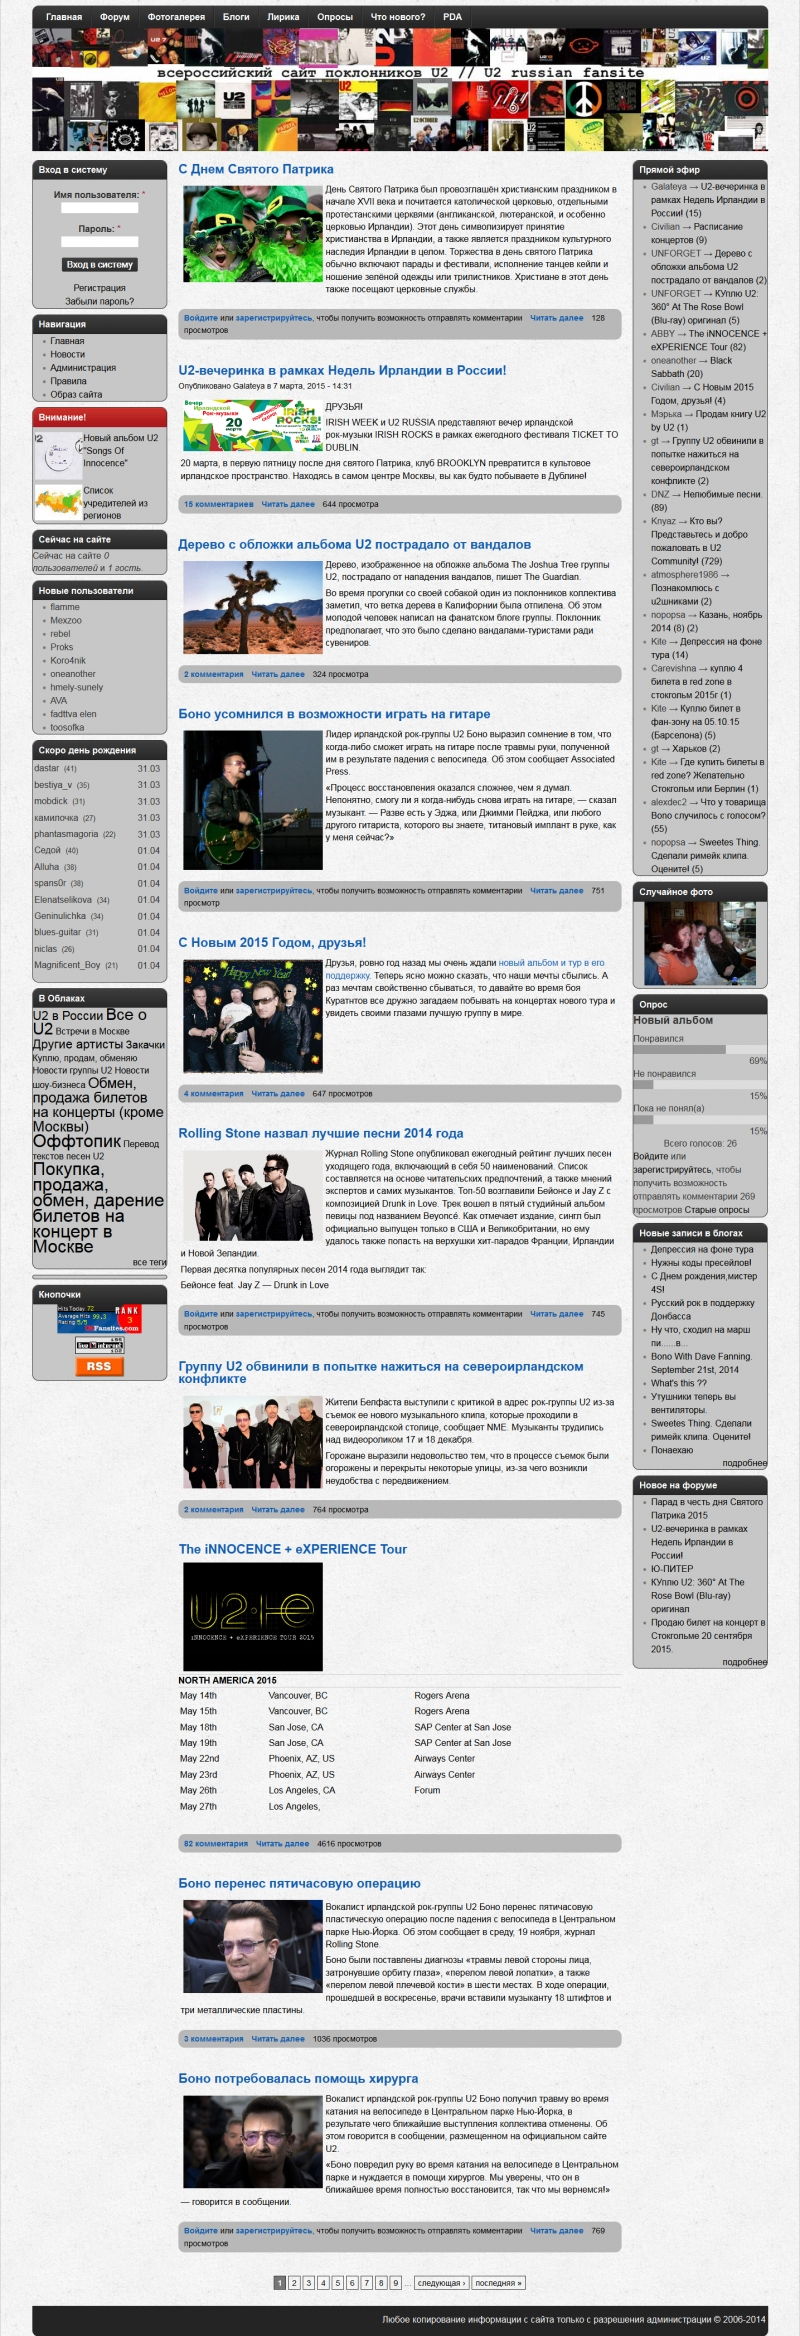 Скриншот сайта «u2.ru» от 31.03.2015 года